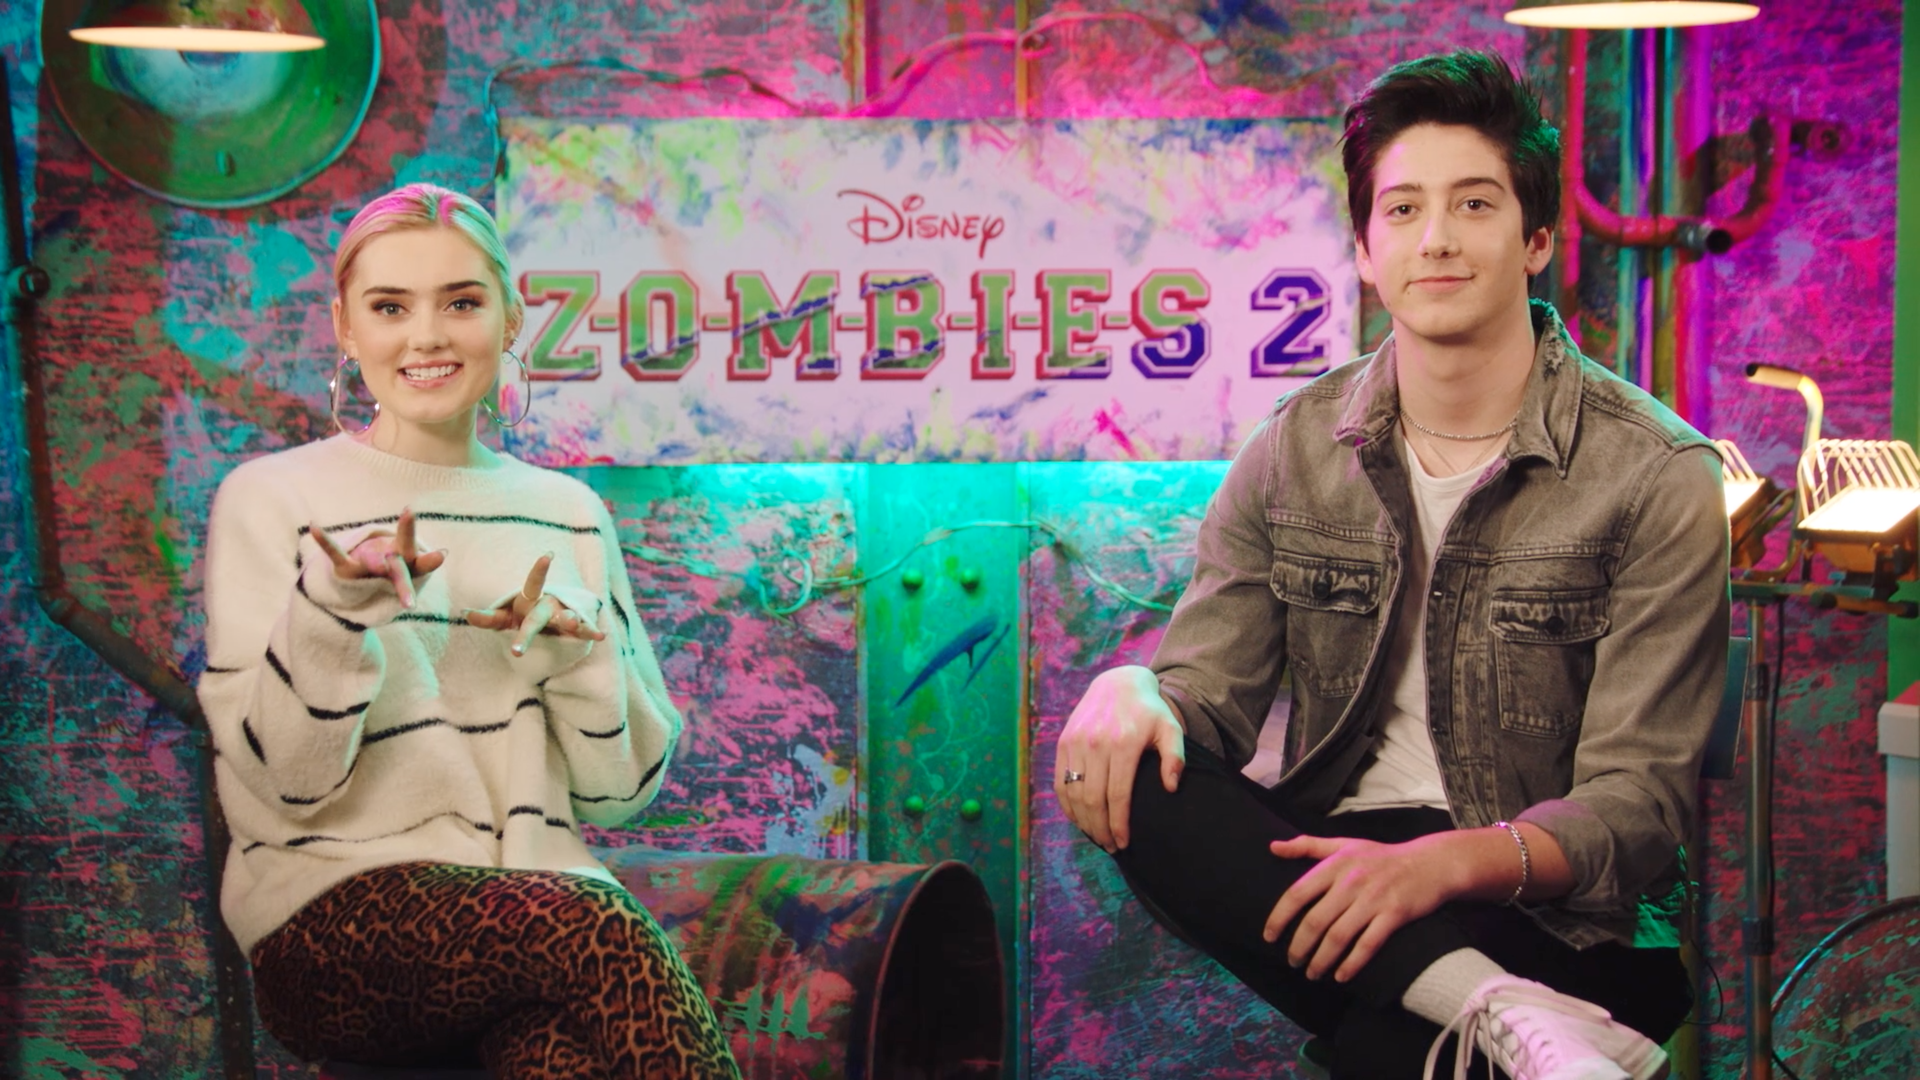 Zombies, o novo filme do Disney Channel, mostra que é legal ser